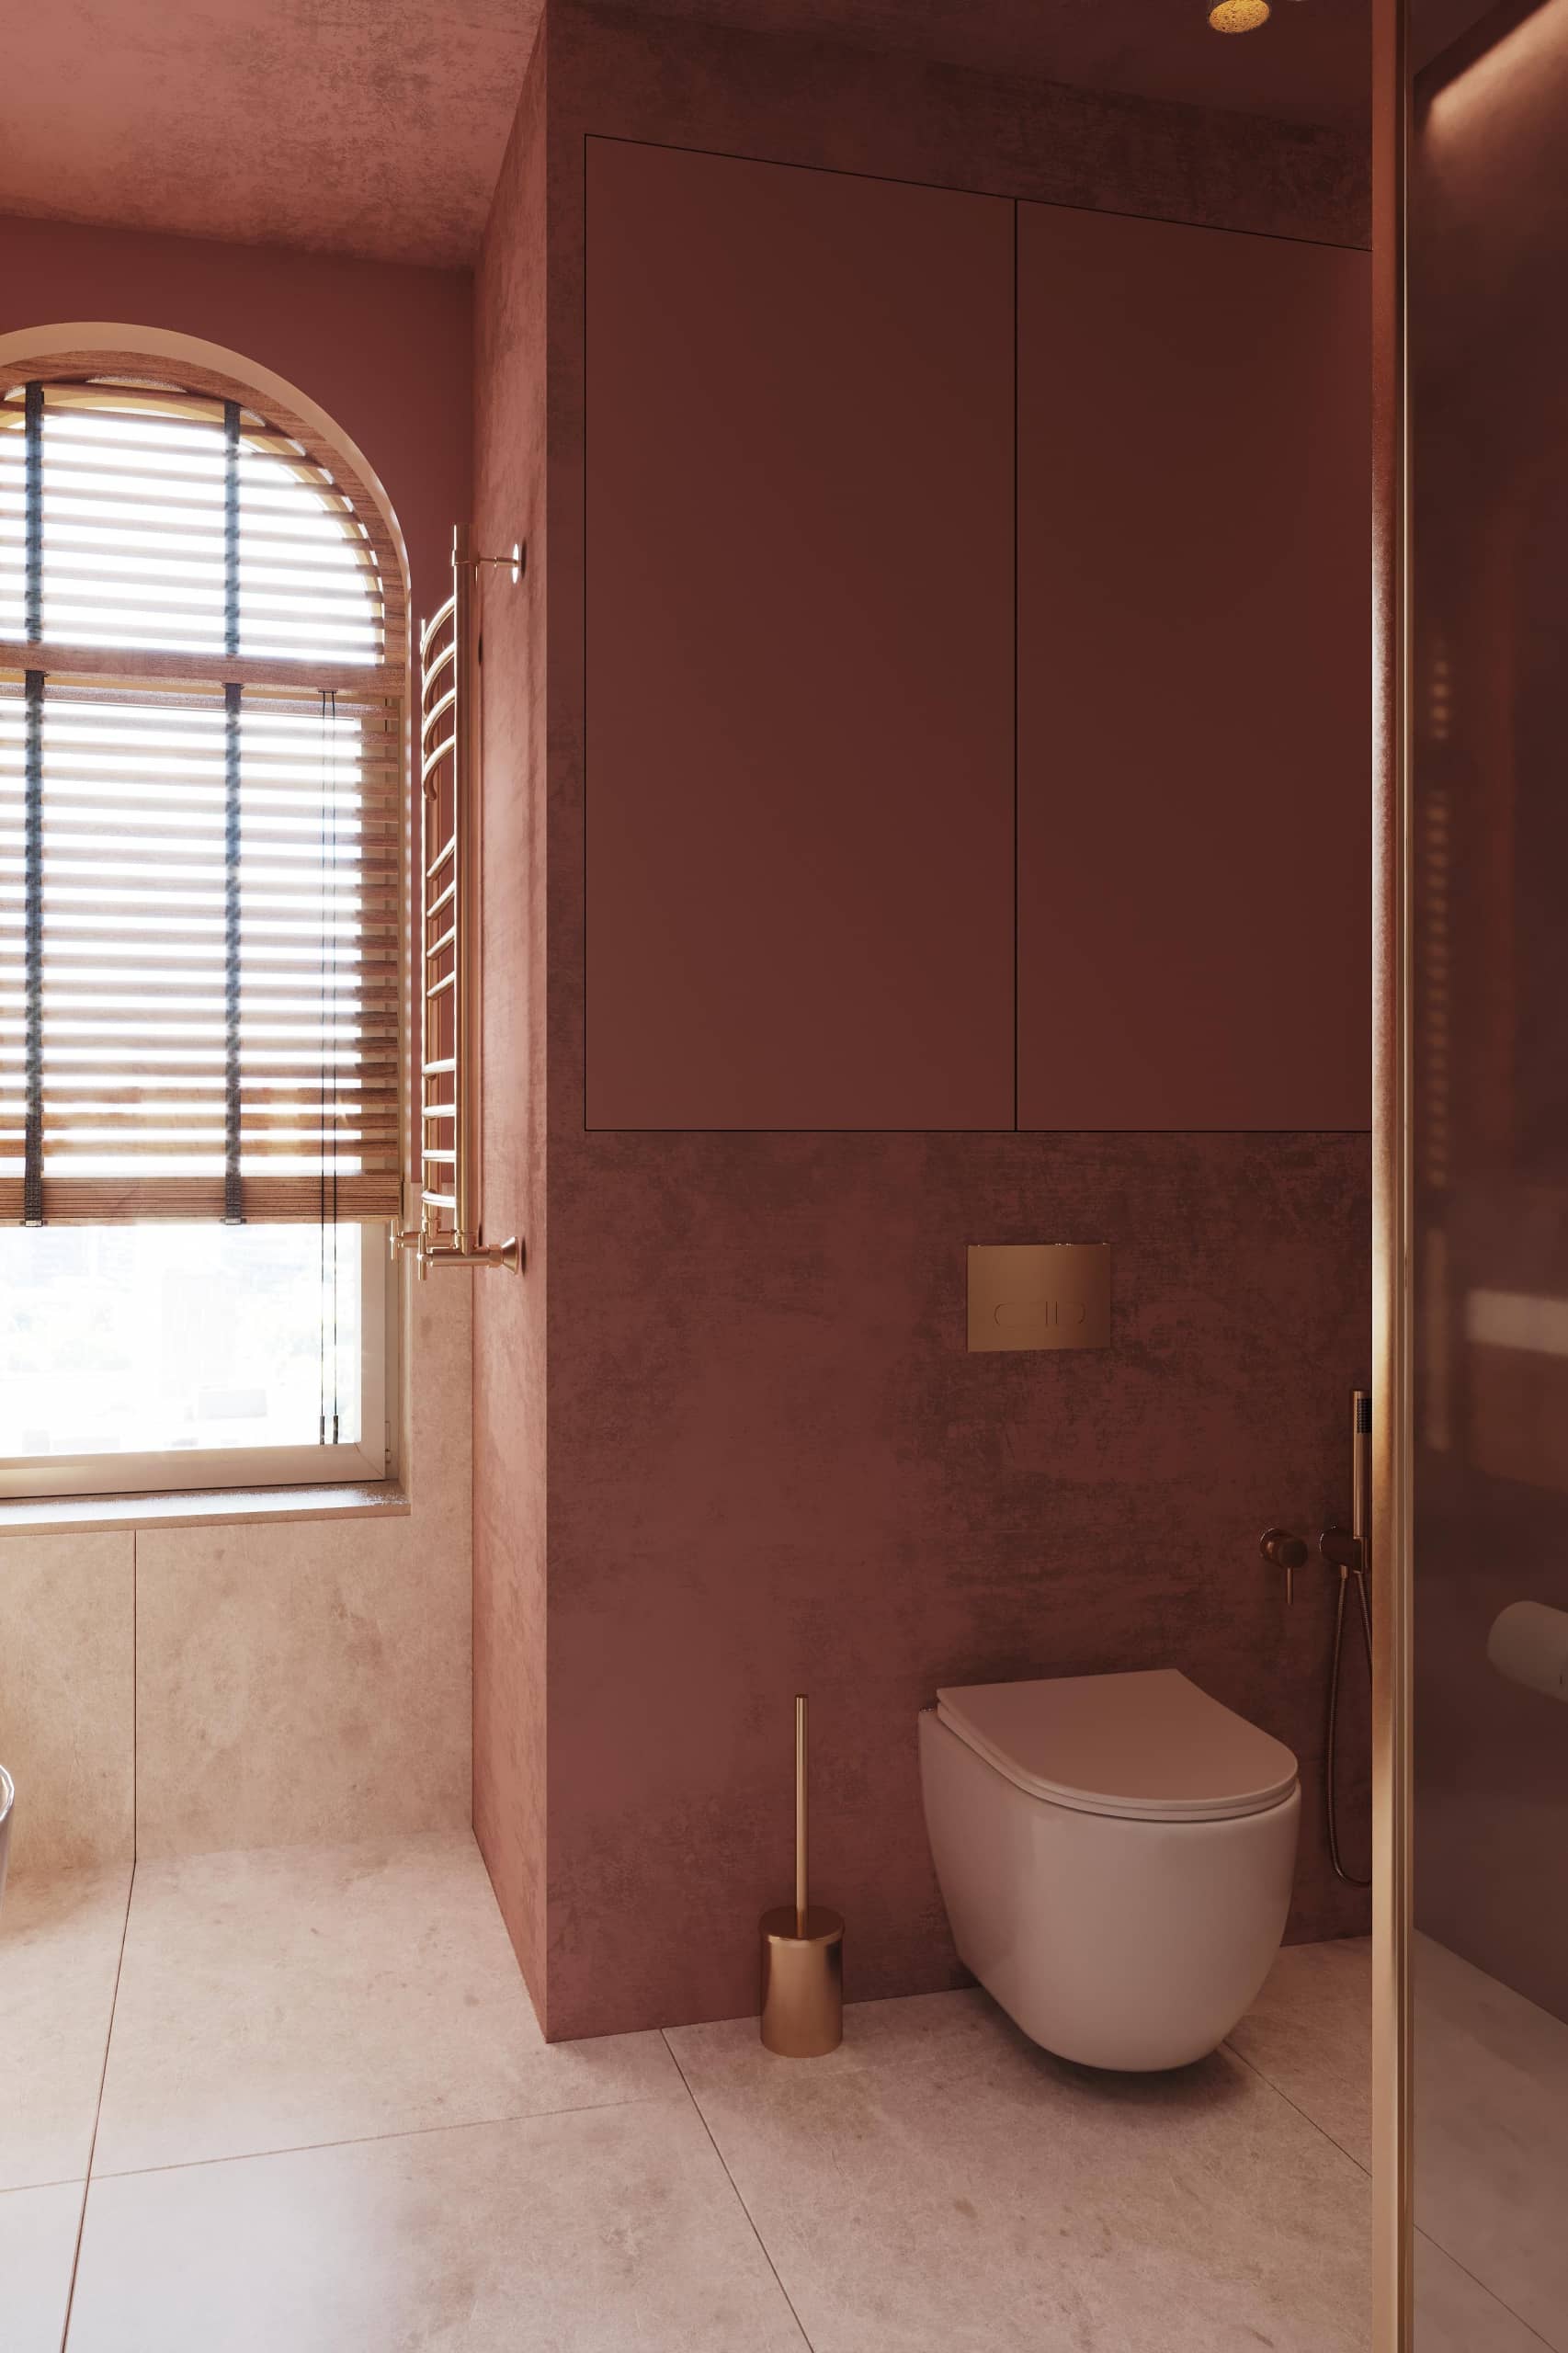 Стены и потолок выкрашены декоративной штукатуркой насыщенного терракотово-розового цвета